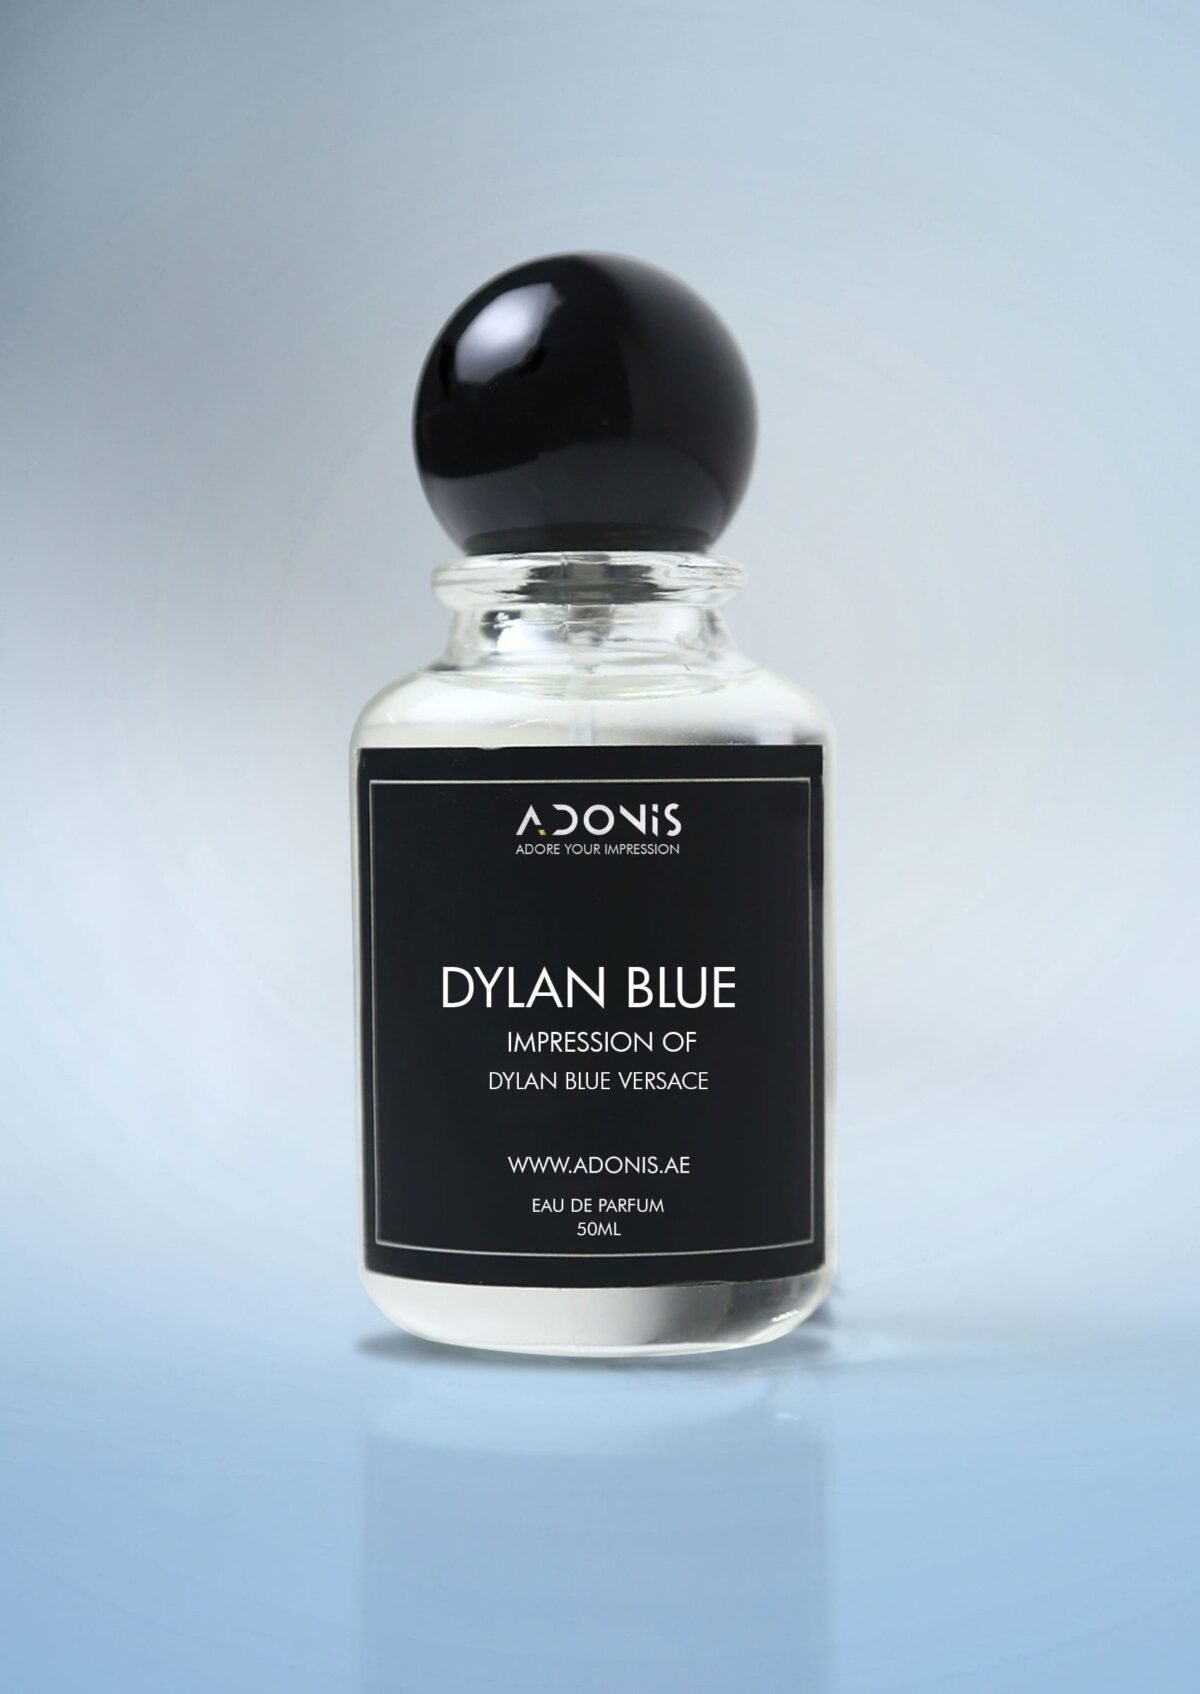 DYLAN BLUE